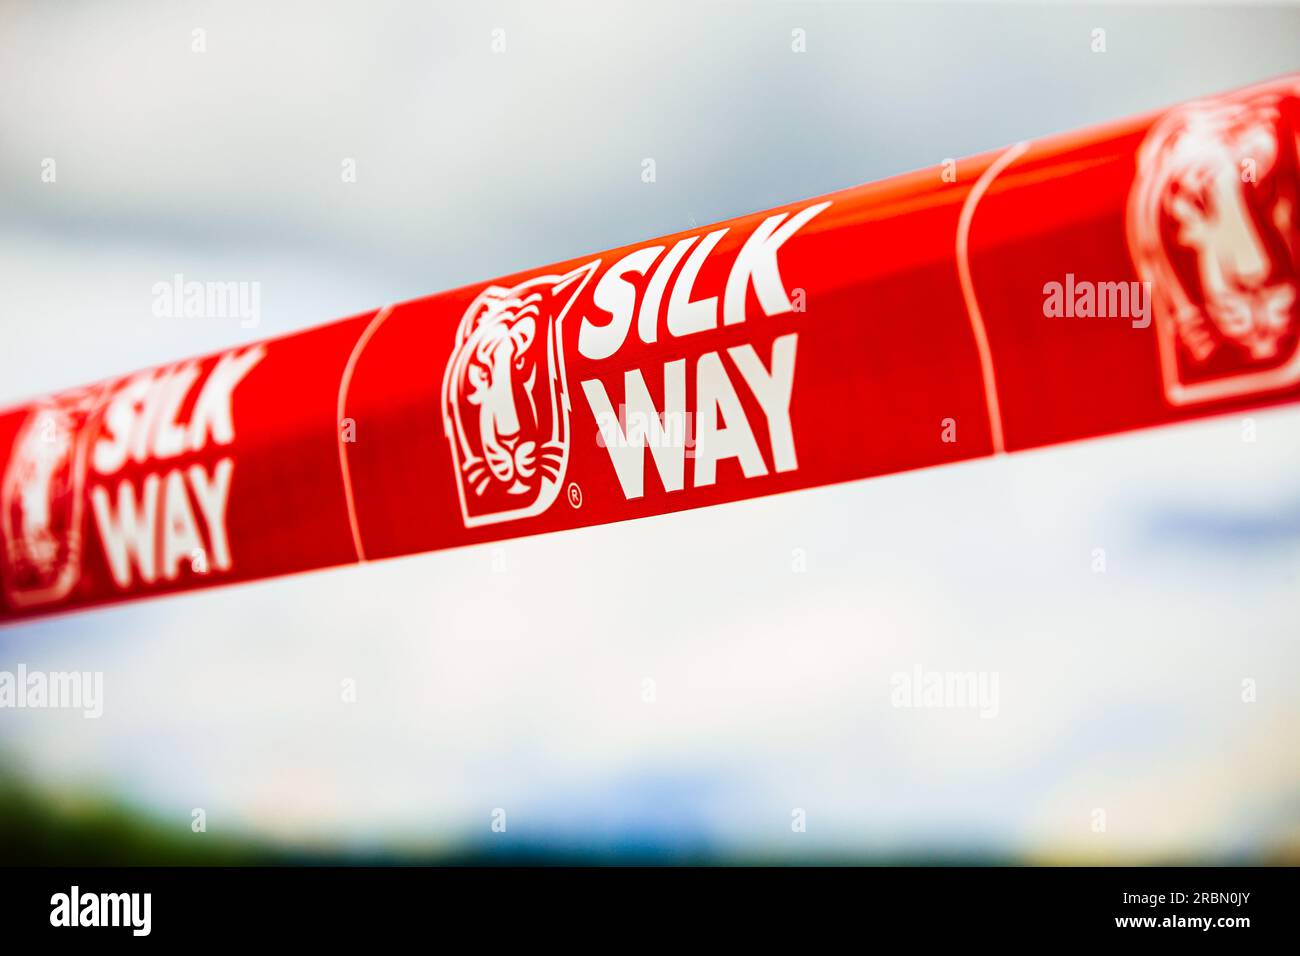 Région de Chelyabinsk, Russie - 10 juillet 2017 : bande rouge avec l'inscription 'Silk Way' Banque D'Images